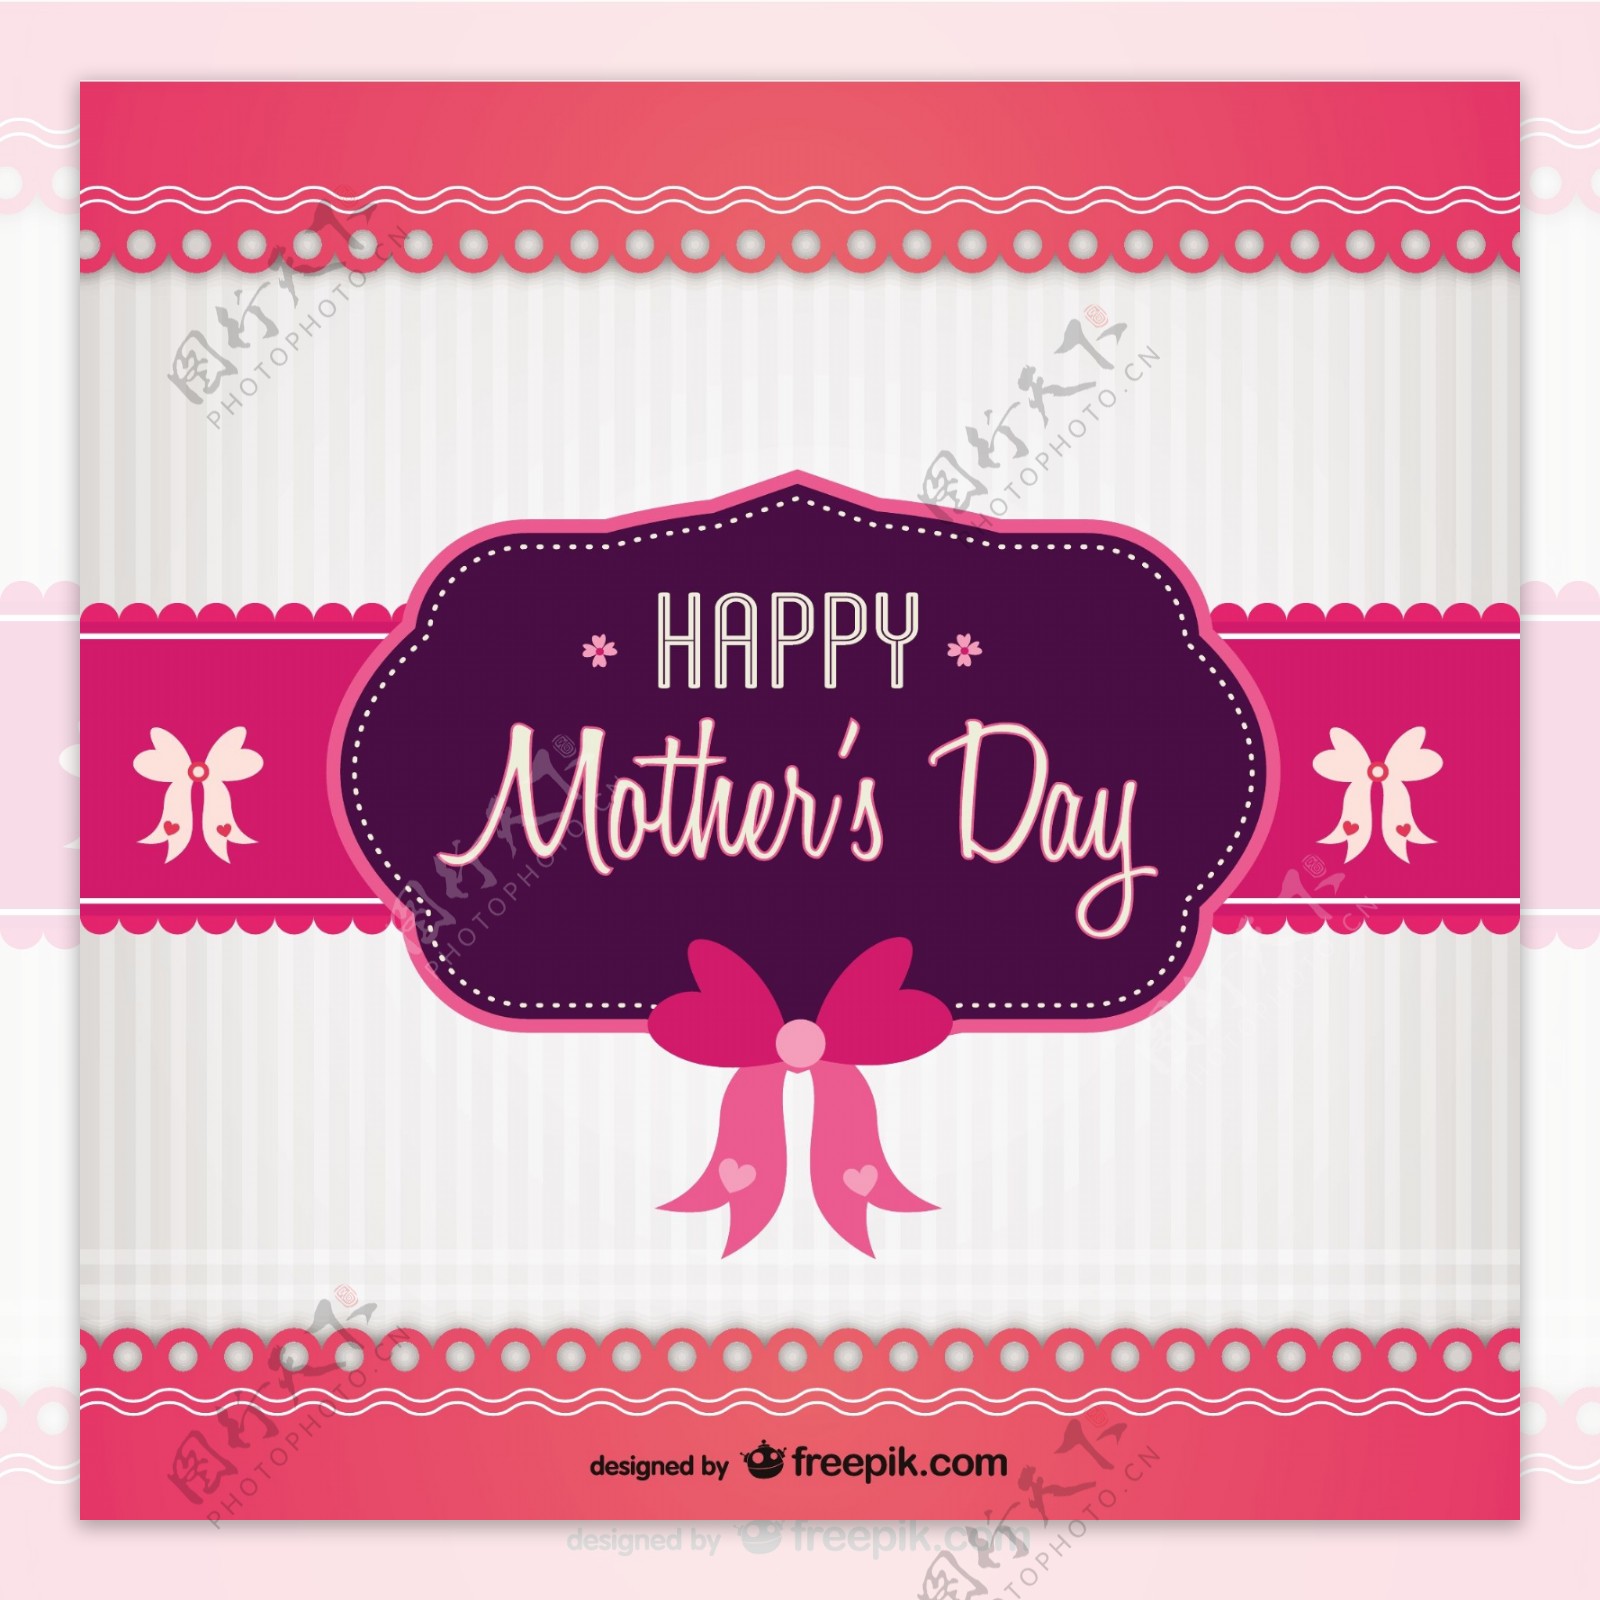 粉色和紫色的母亲节卡片与蝴蝶结